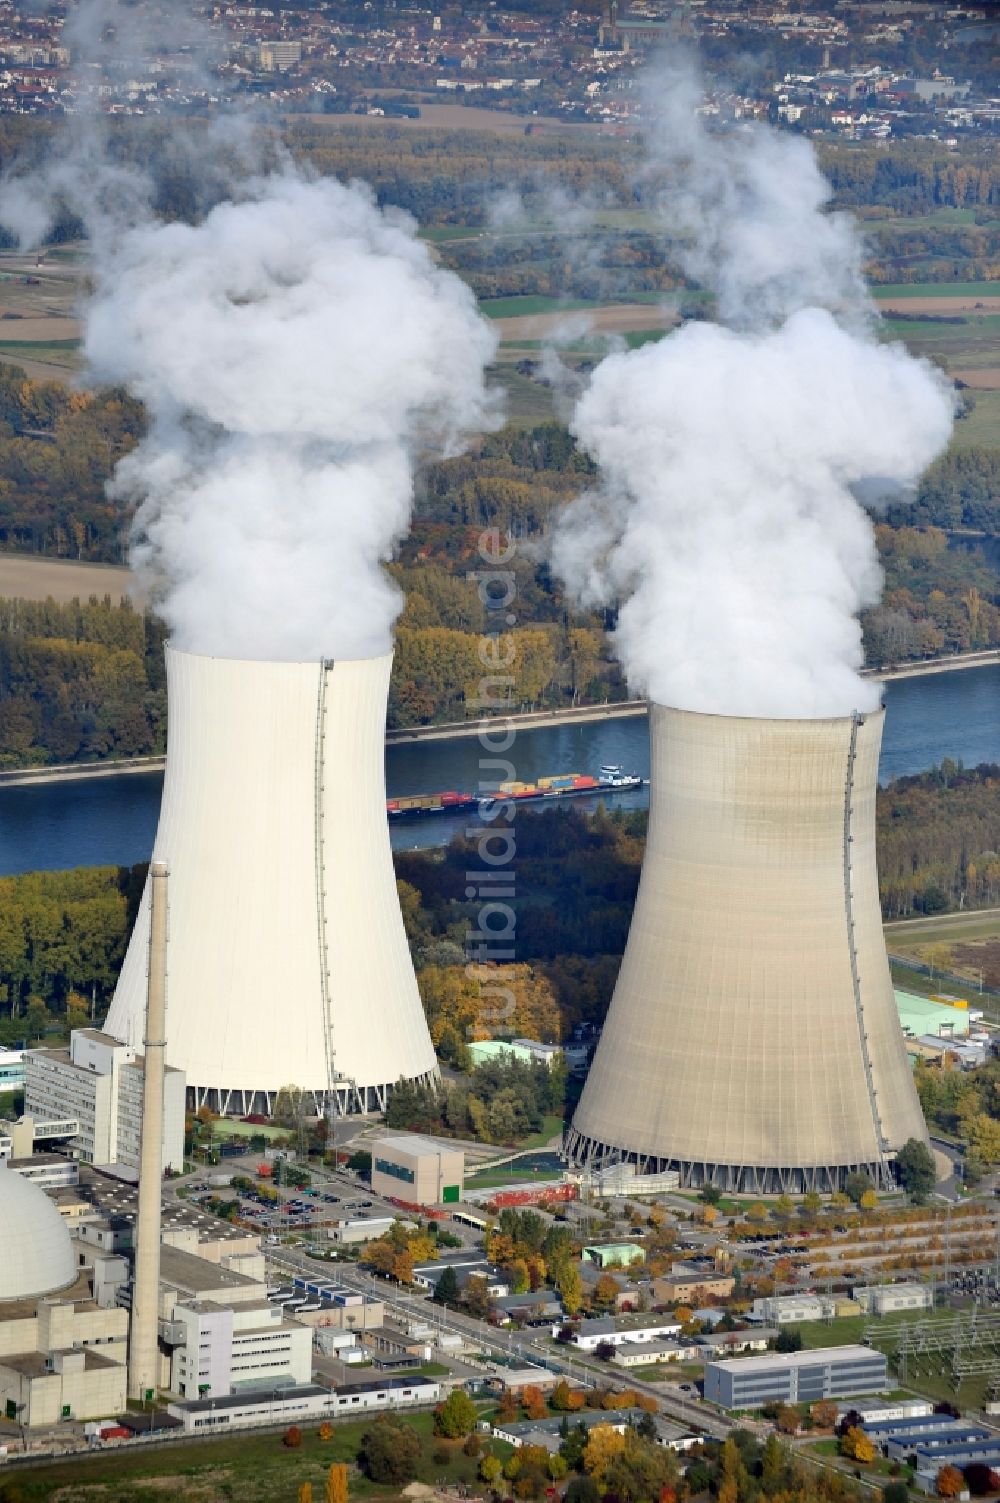 Philippsburg von oben - Reaktorblöcke und Anlagen des AKW - KKW Kernkraftwerk in Philippsburg im Bundesland Baden-Württemberg, Deutschland